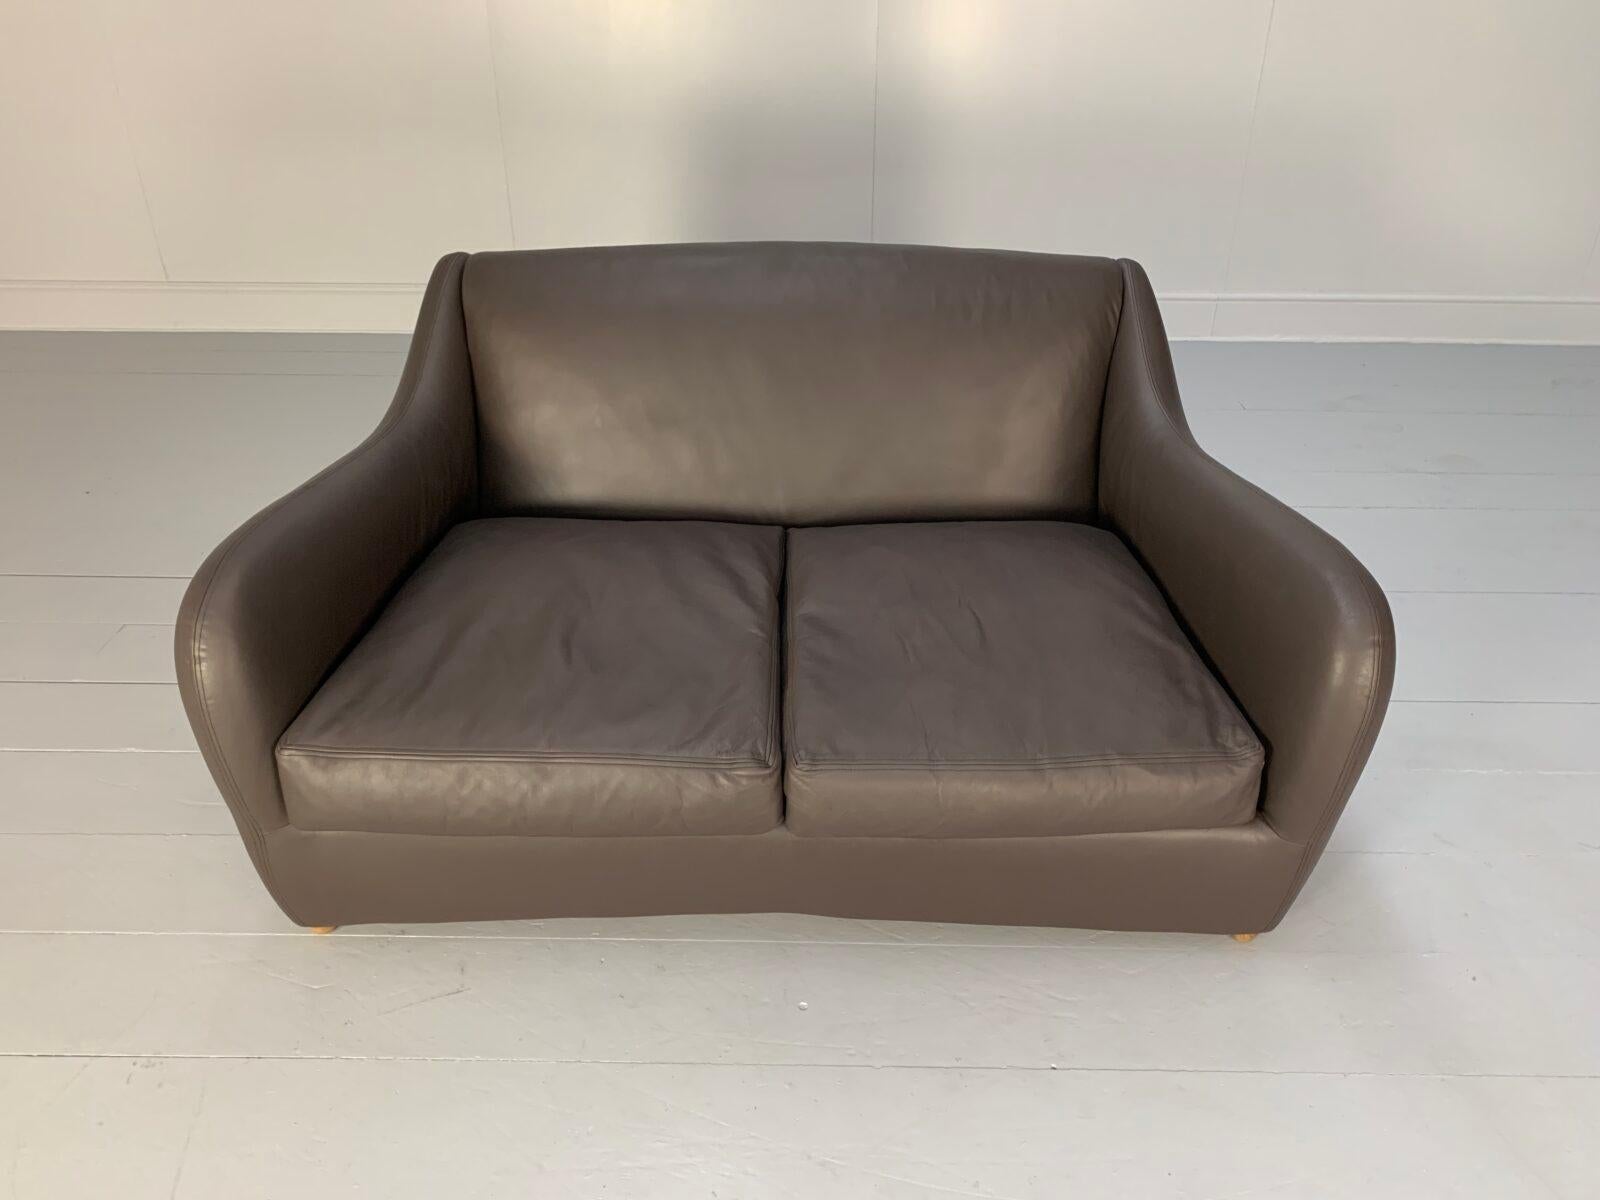 SCP Conran Matthew Hilton “Balzac” 2-Seat Sofa – In Dark Brown Leather 2